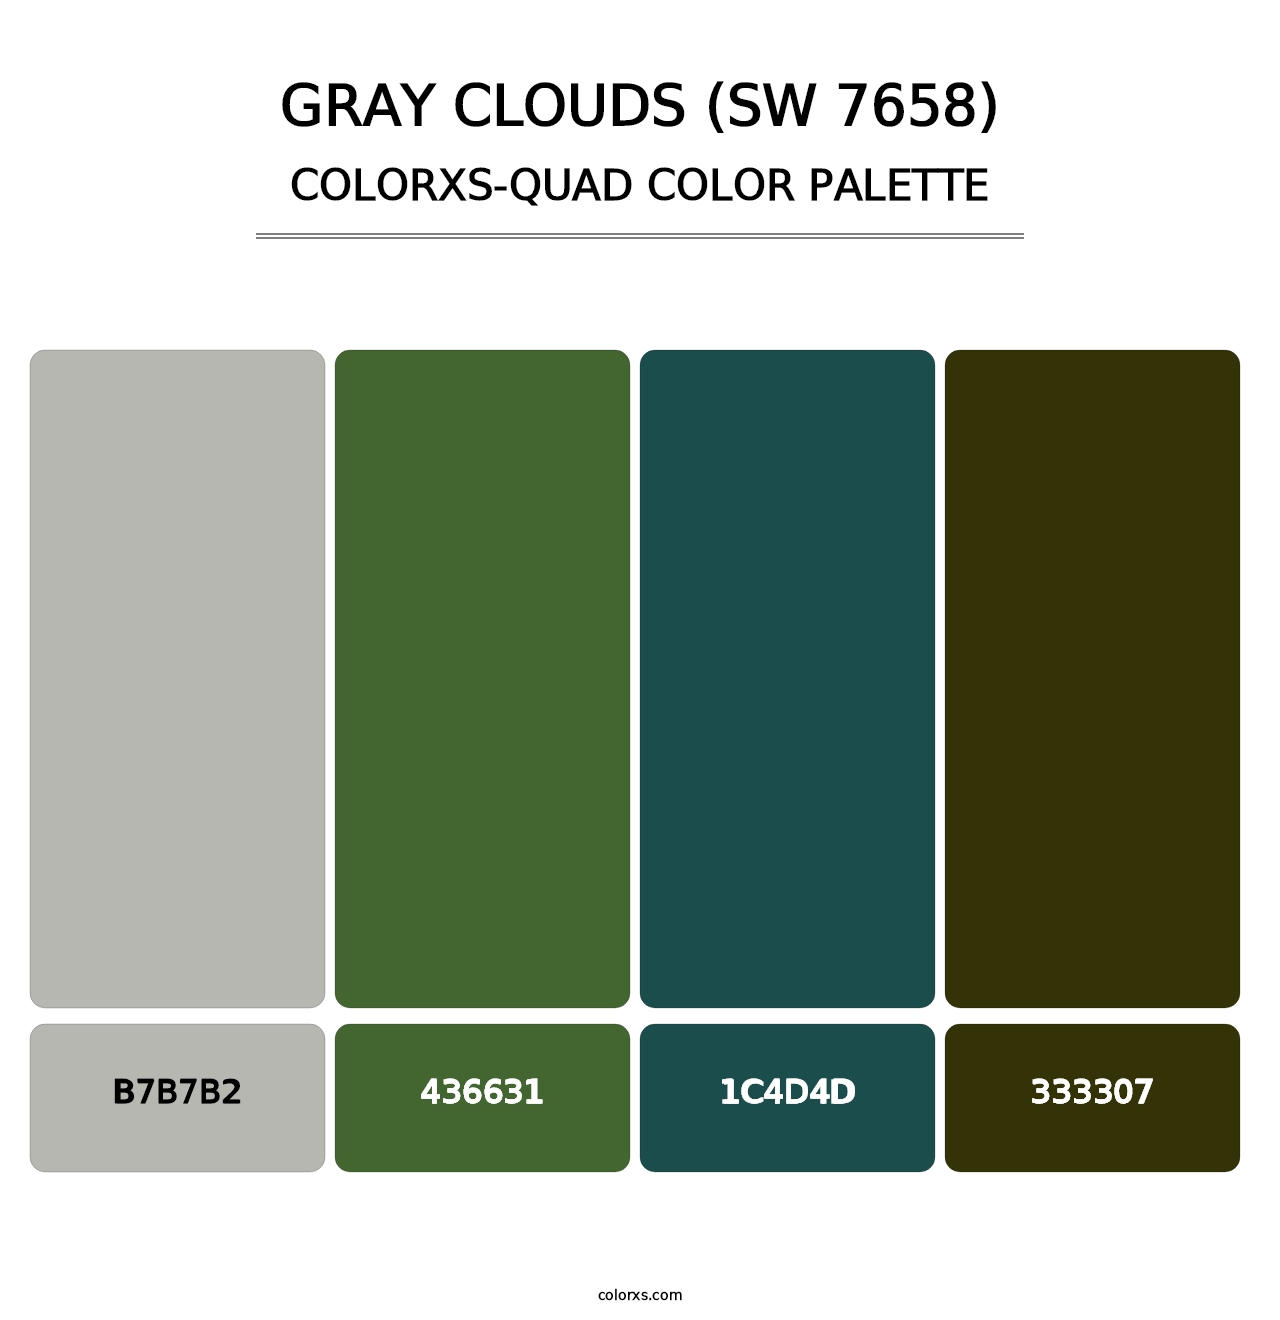 Gray Clouds (SW 7658) - Colorxs Quad Palette